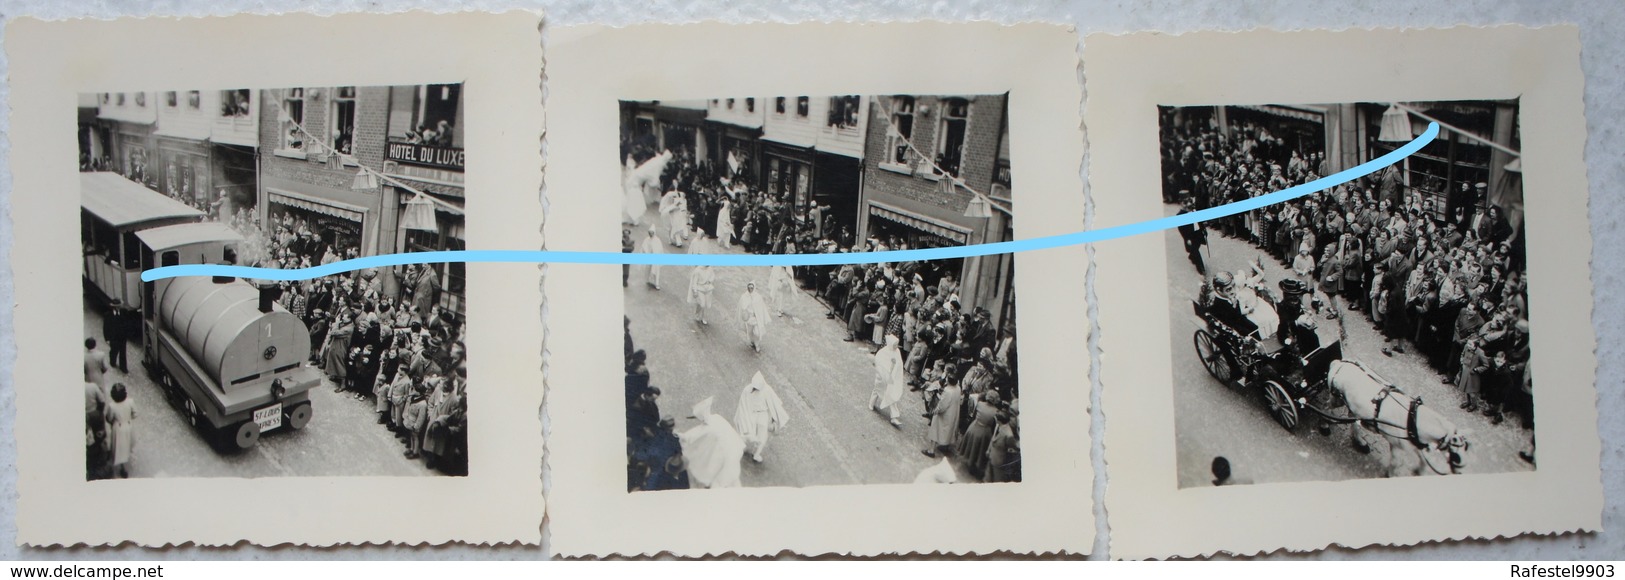 Photox12 STAVELOT LAETARE Carnaval Circa 1945-50 Région Malemdy Spa Blanc Moussi Boucherie Centrale Hôtel